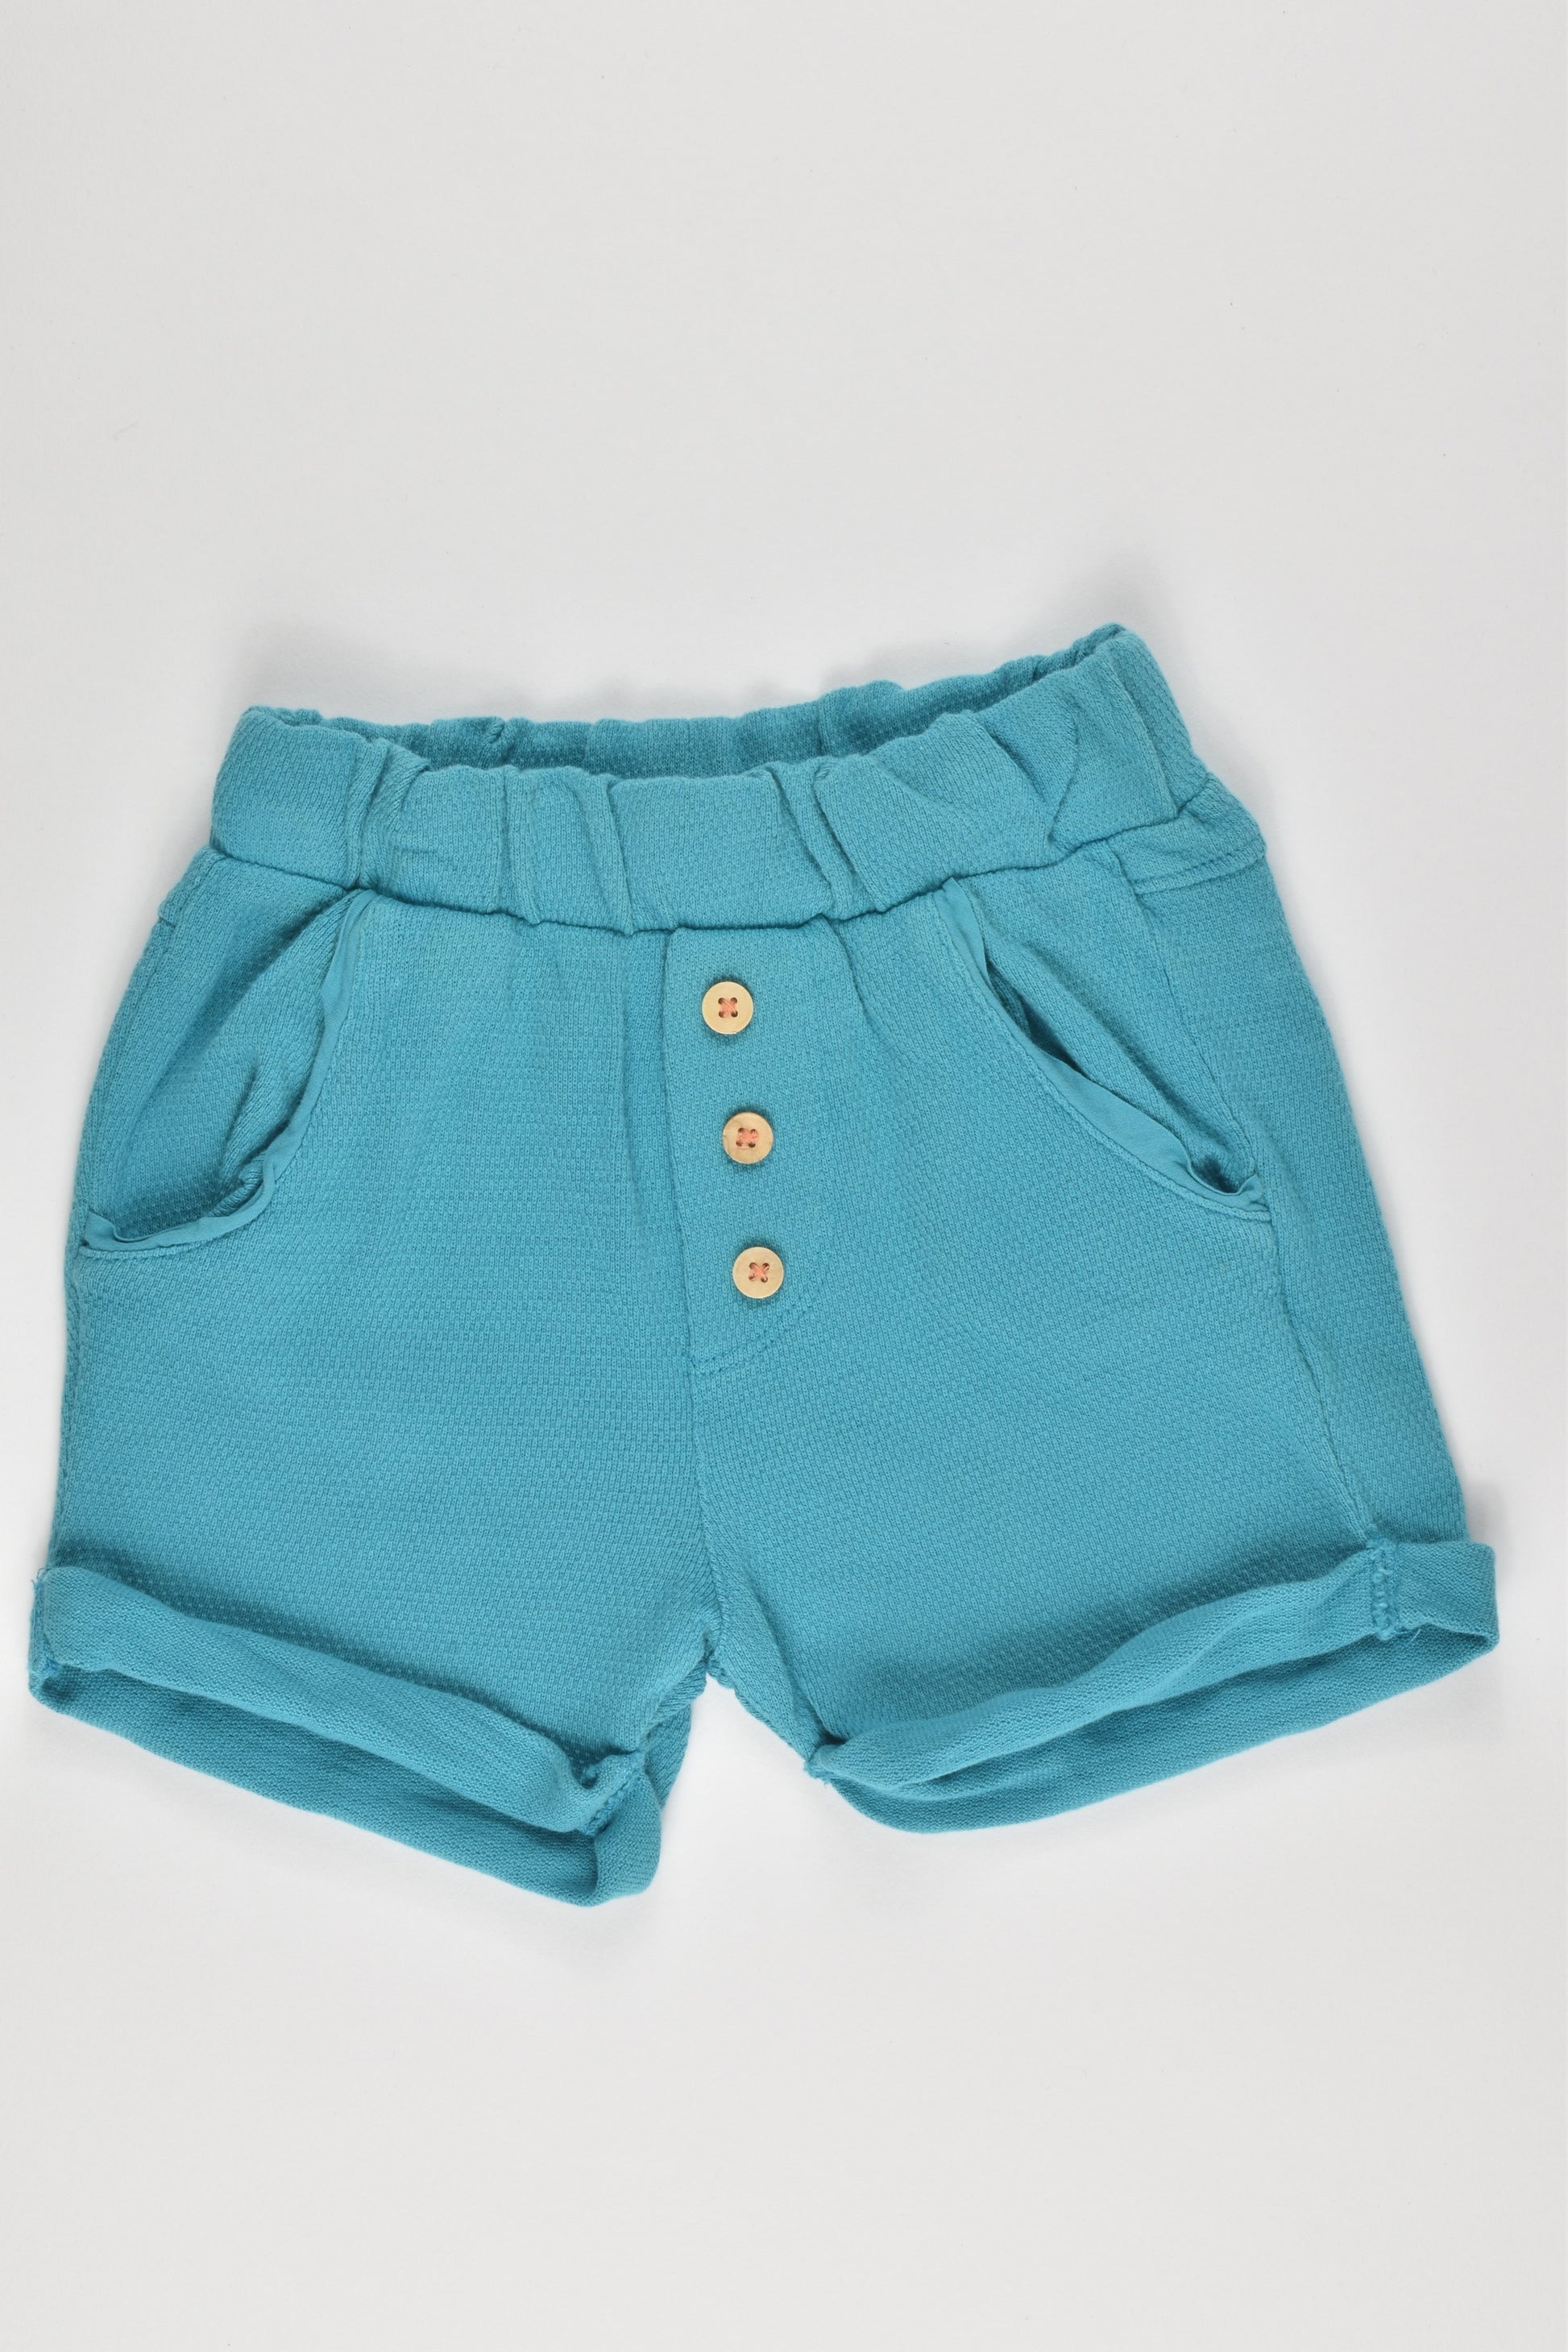 Zara Baby Boy Size 00-0 (6-9 months) Shorts